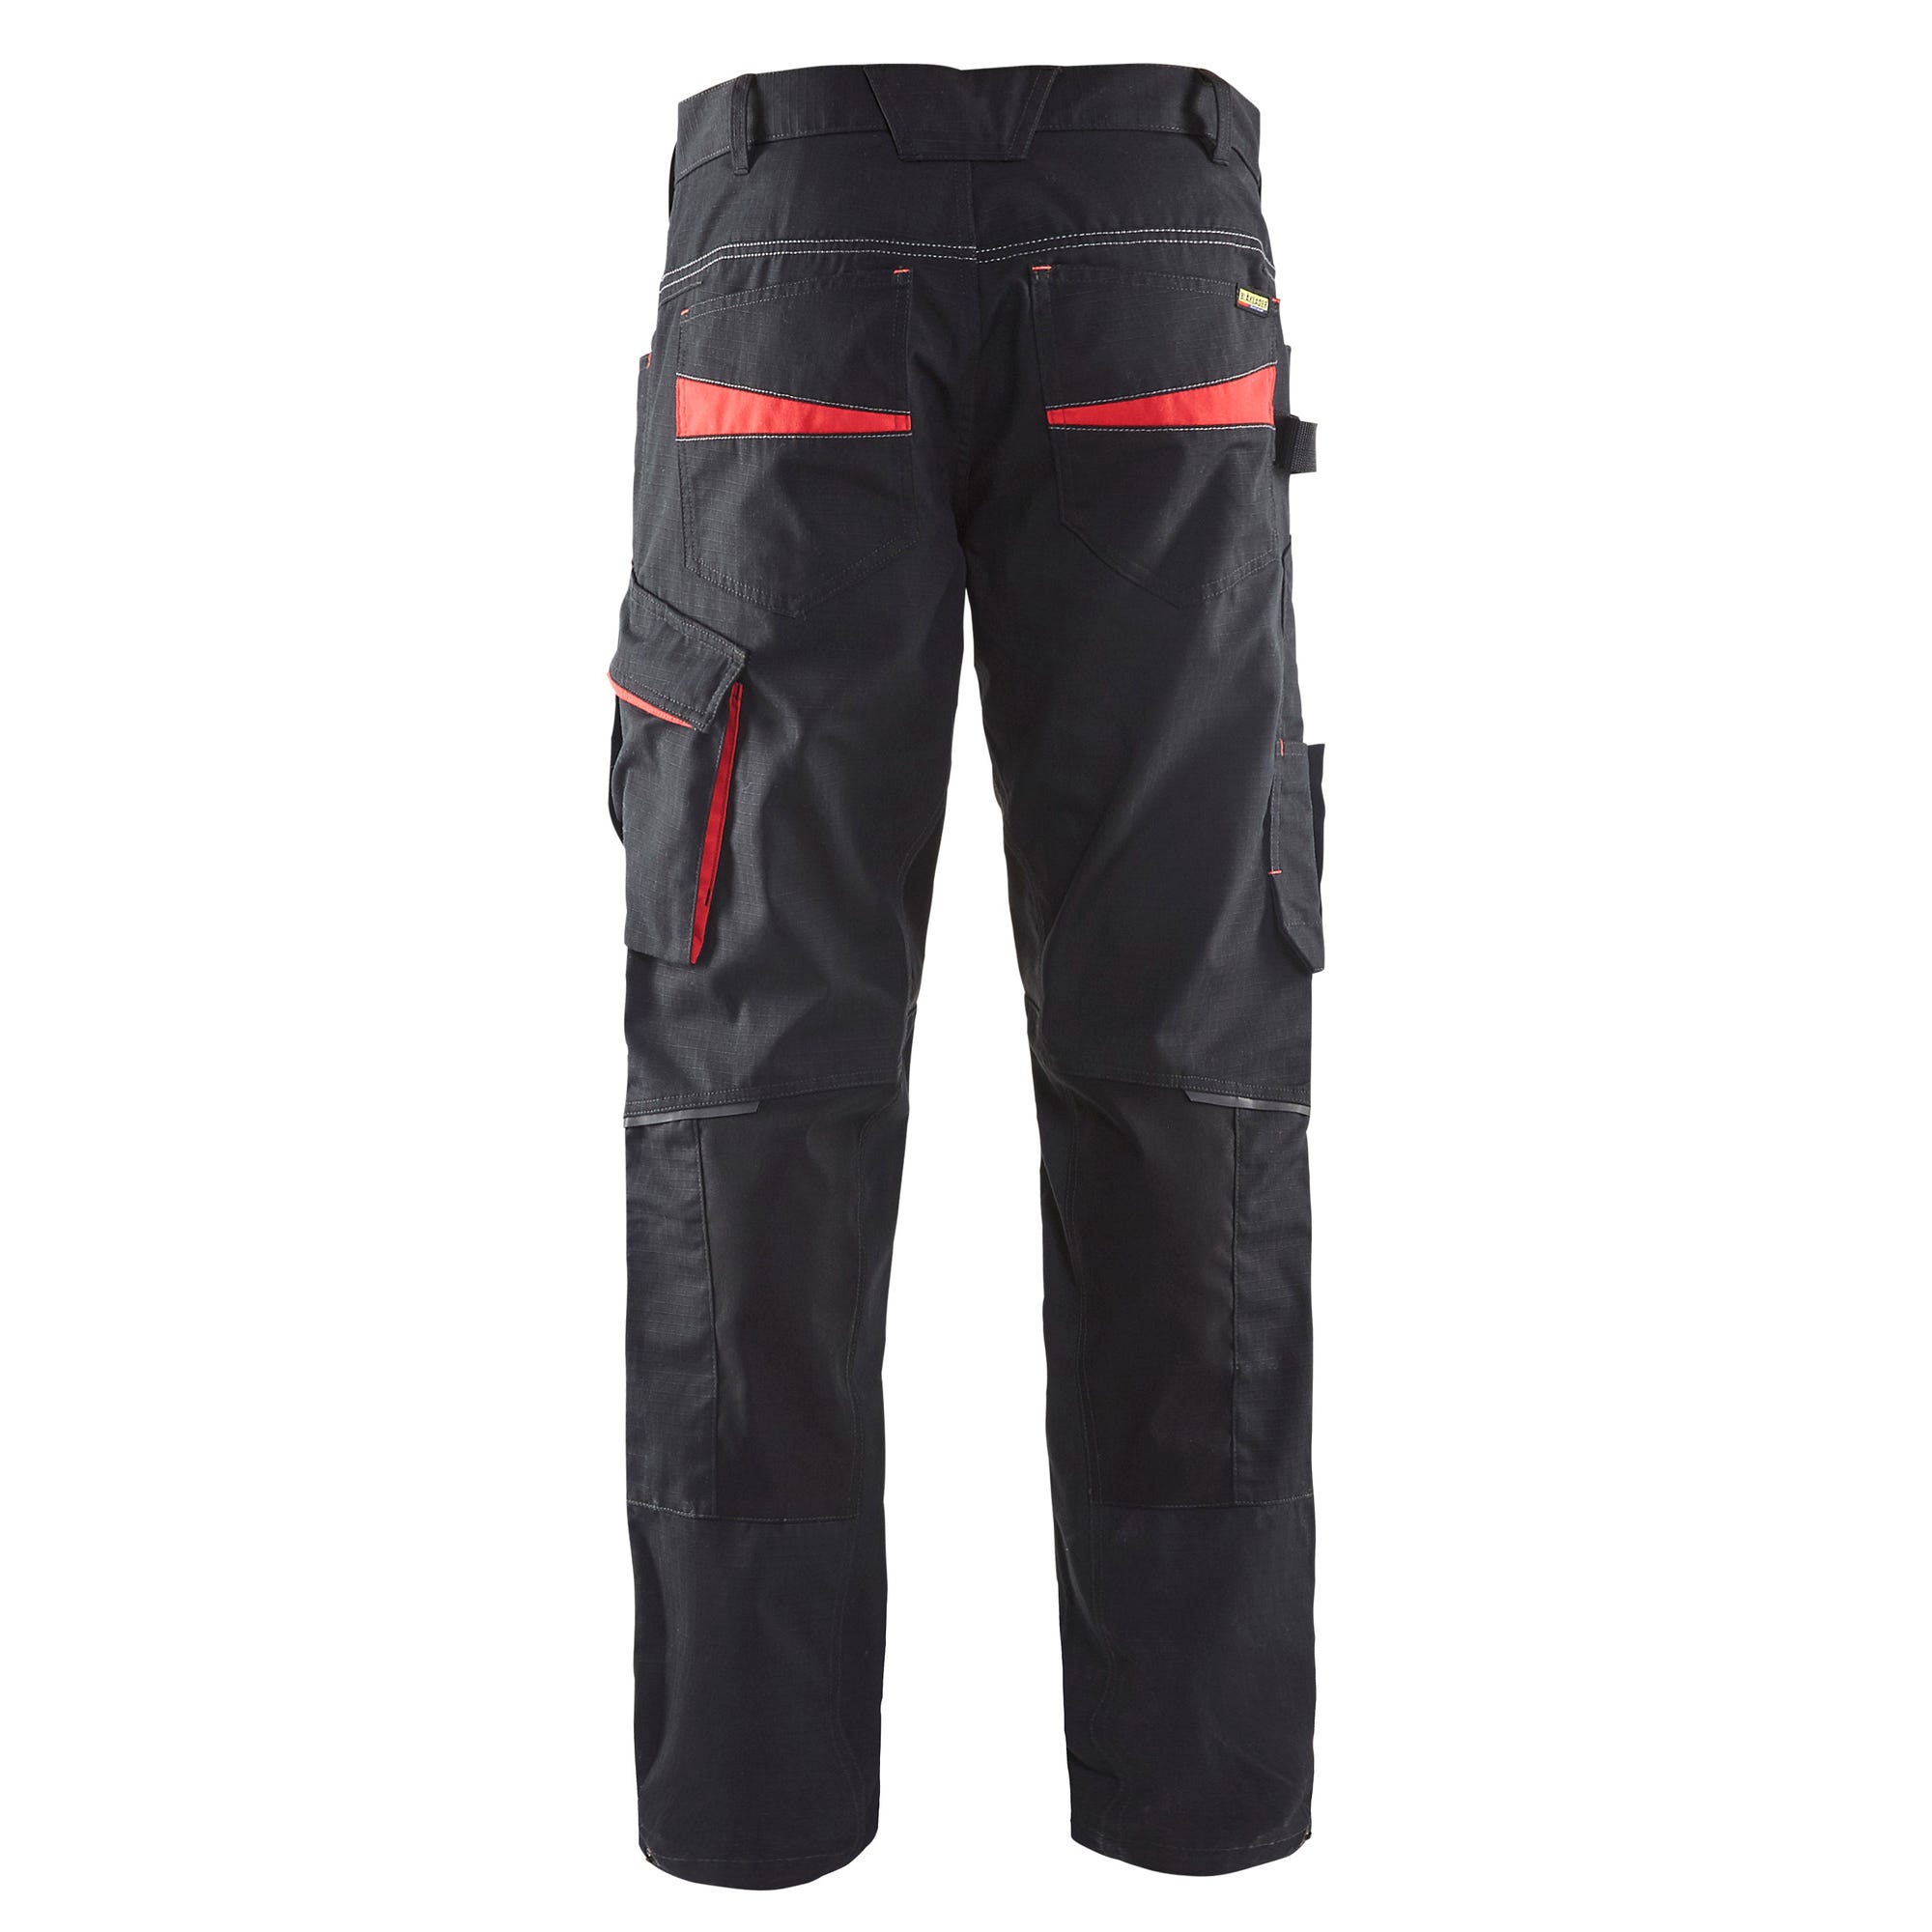 Pantalon de travail stretch Noir/Rouge T.42 1495 - BLAKLADER 1